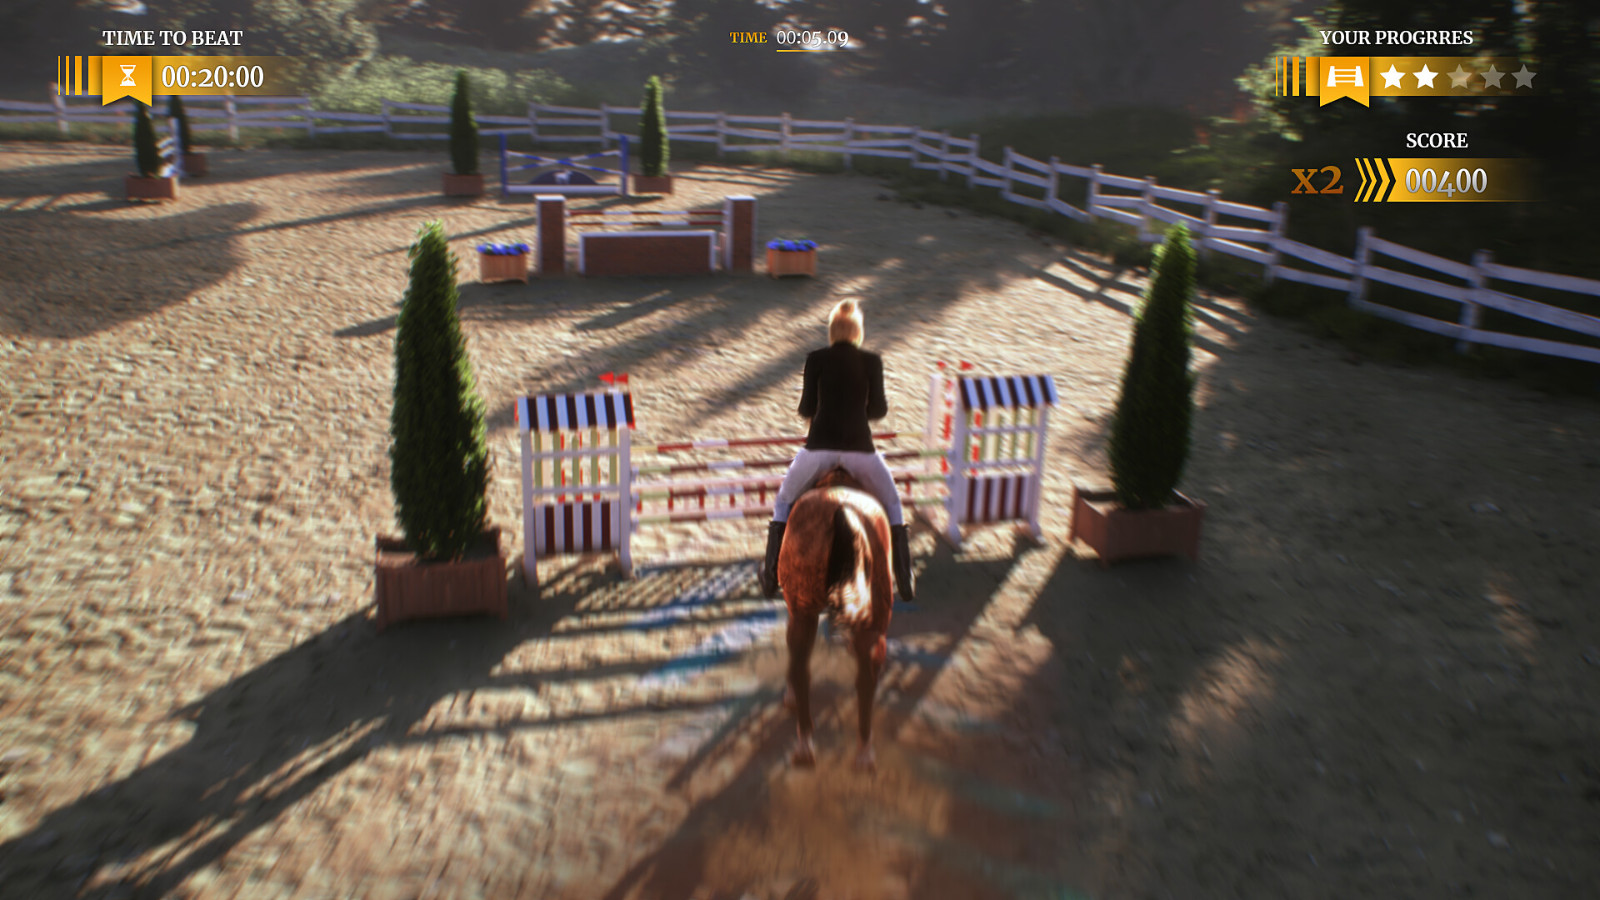 爱马士狂喜 模拟经营游戏《My Horse: Bonded Spirits》Steam页面上线 二次世界 第12张